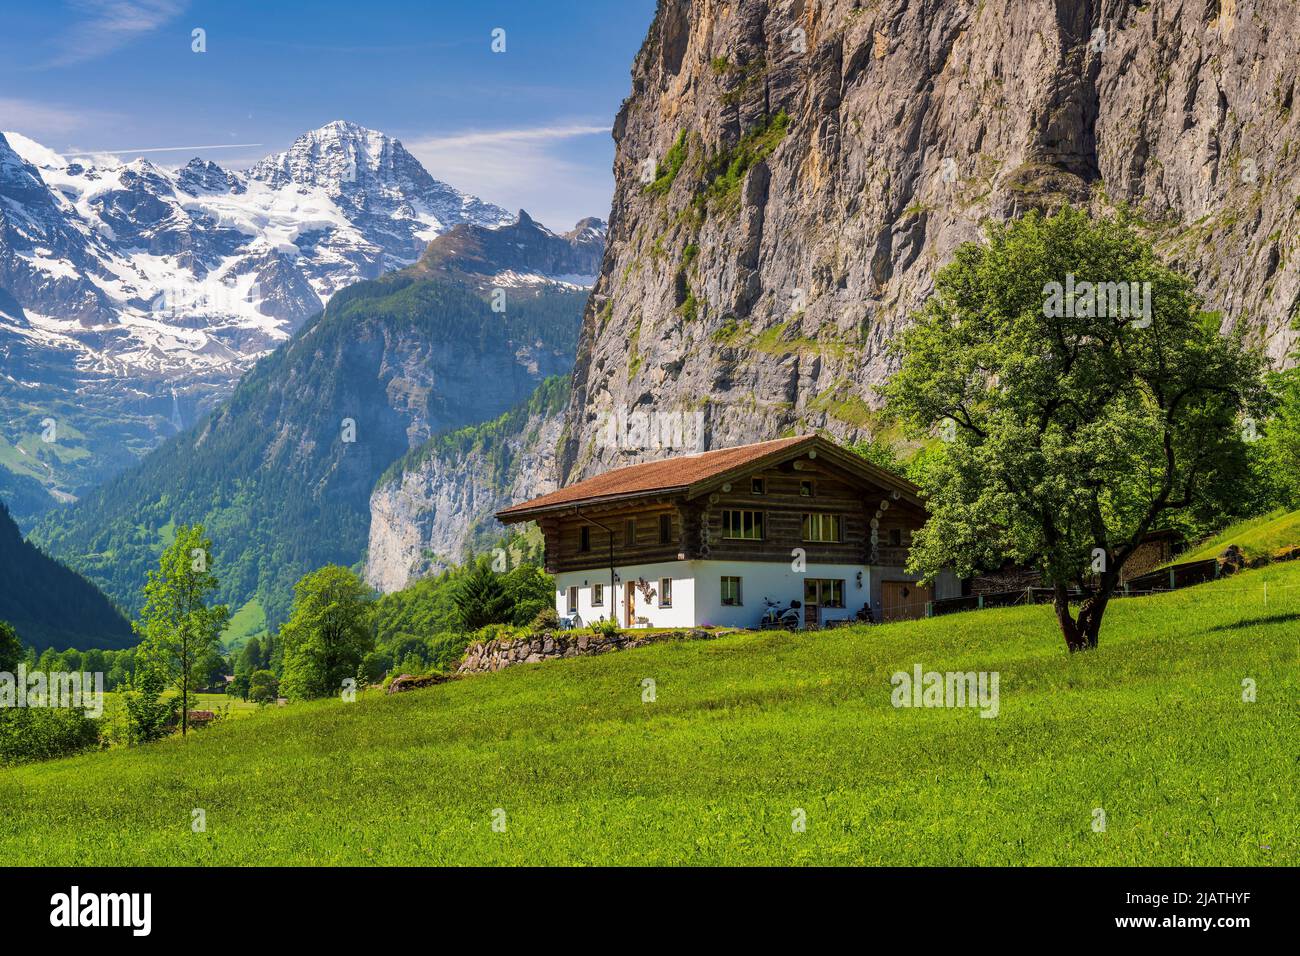 Paysage estival pittoresque de montagne, Lauterbrunnen, canton de Berne, Suisse Banque D'Images